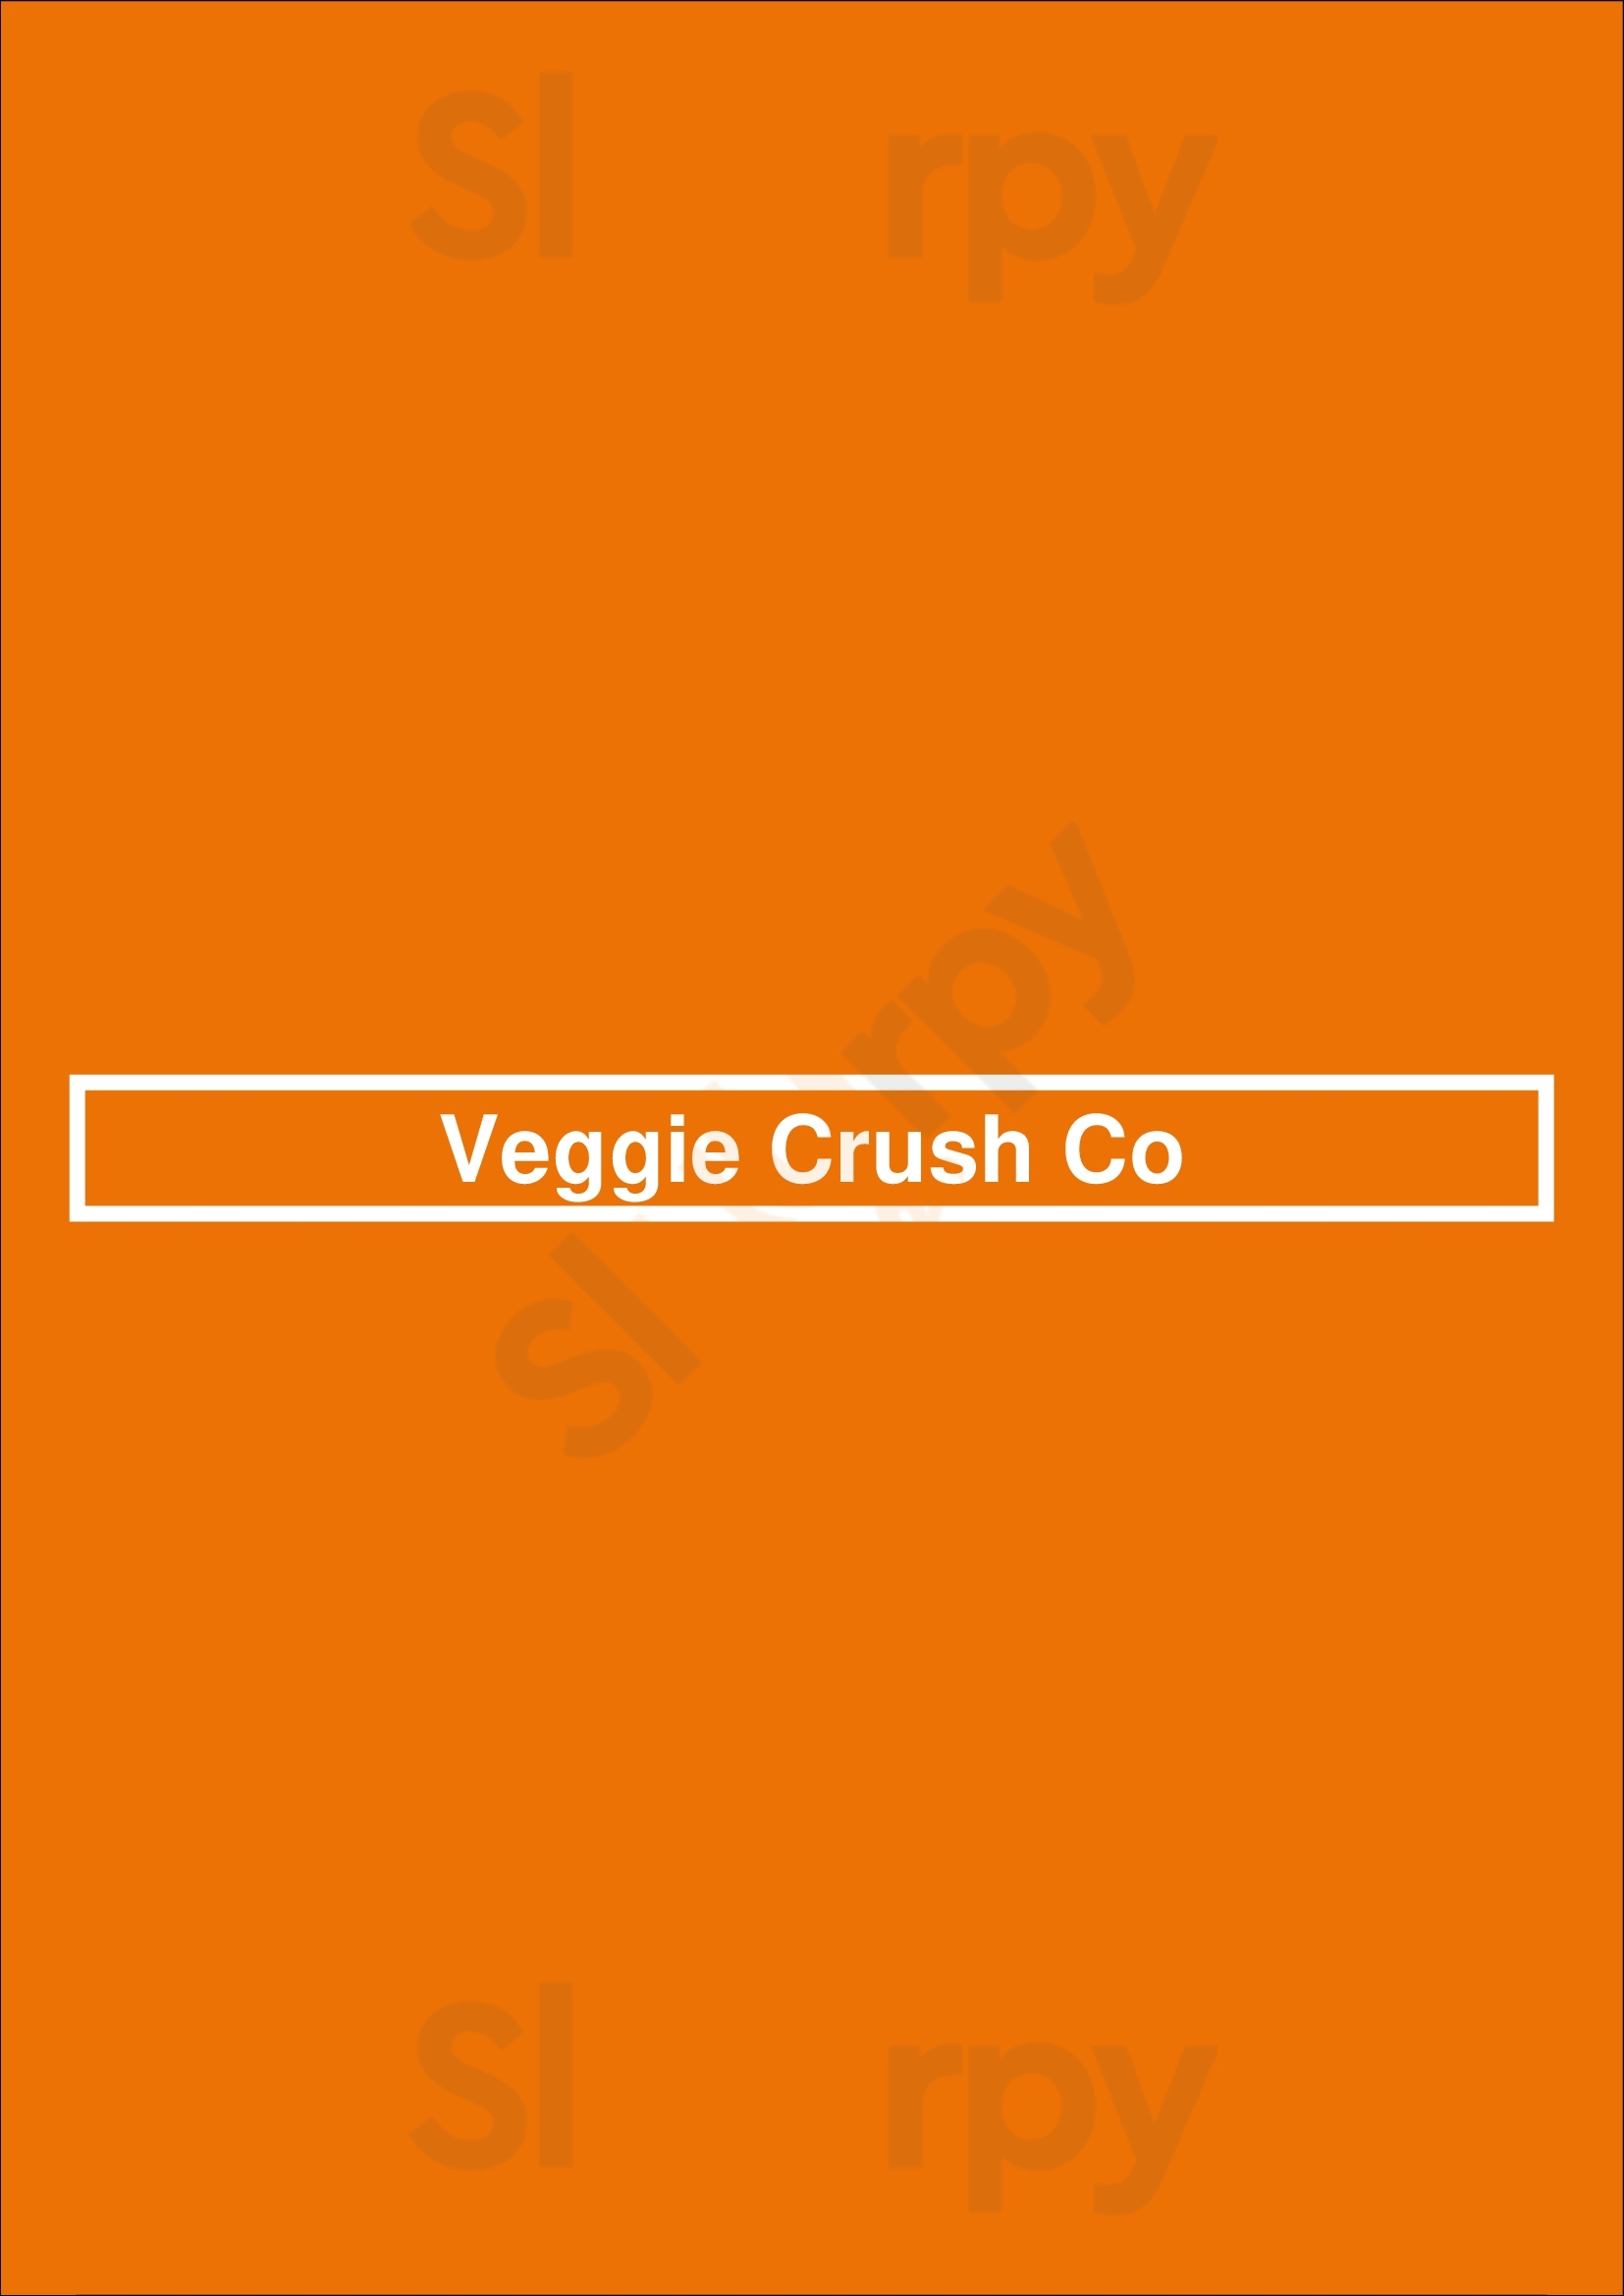 Veggie Crush Co Toronto Menu - 1